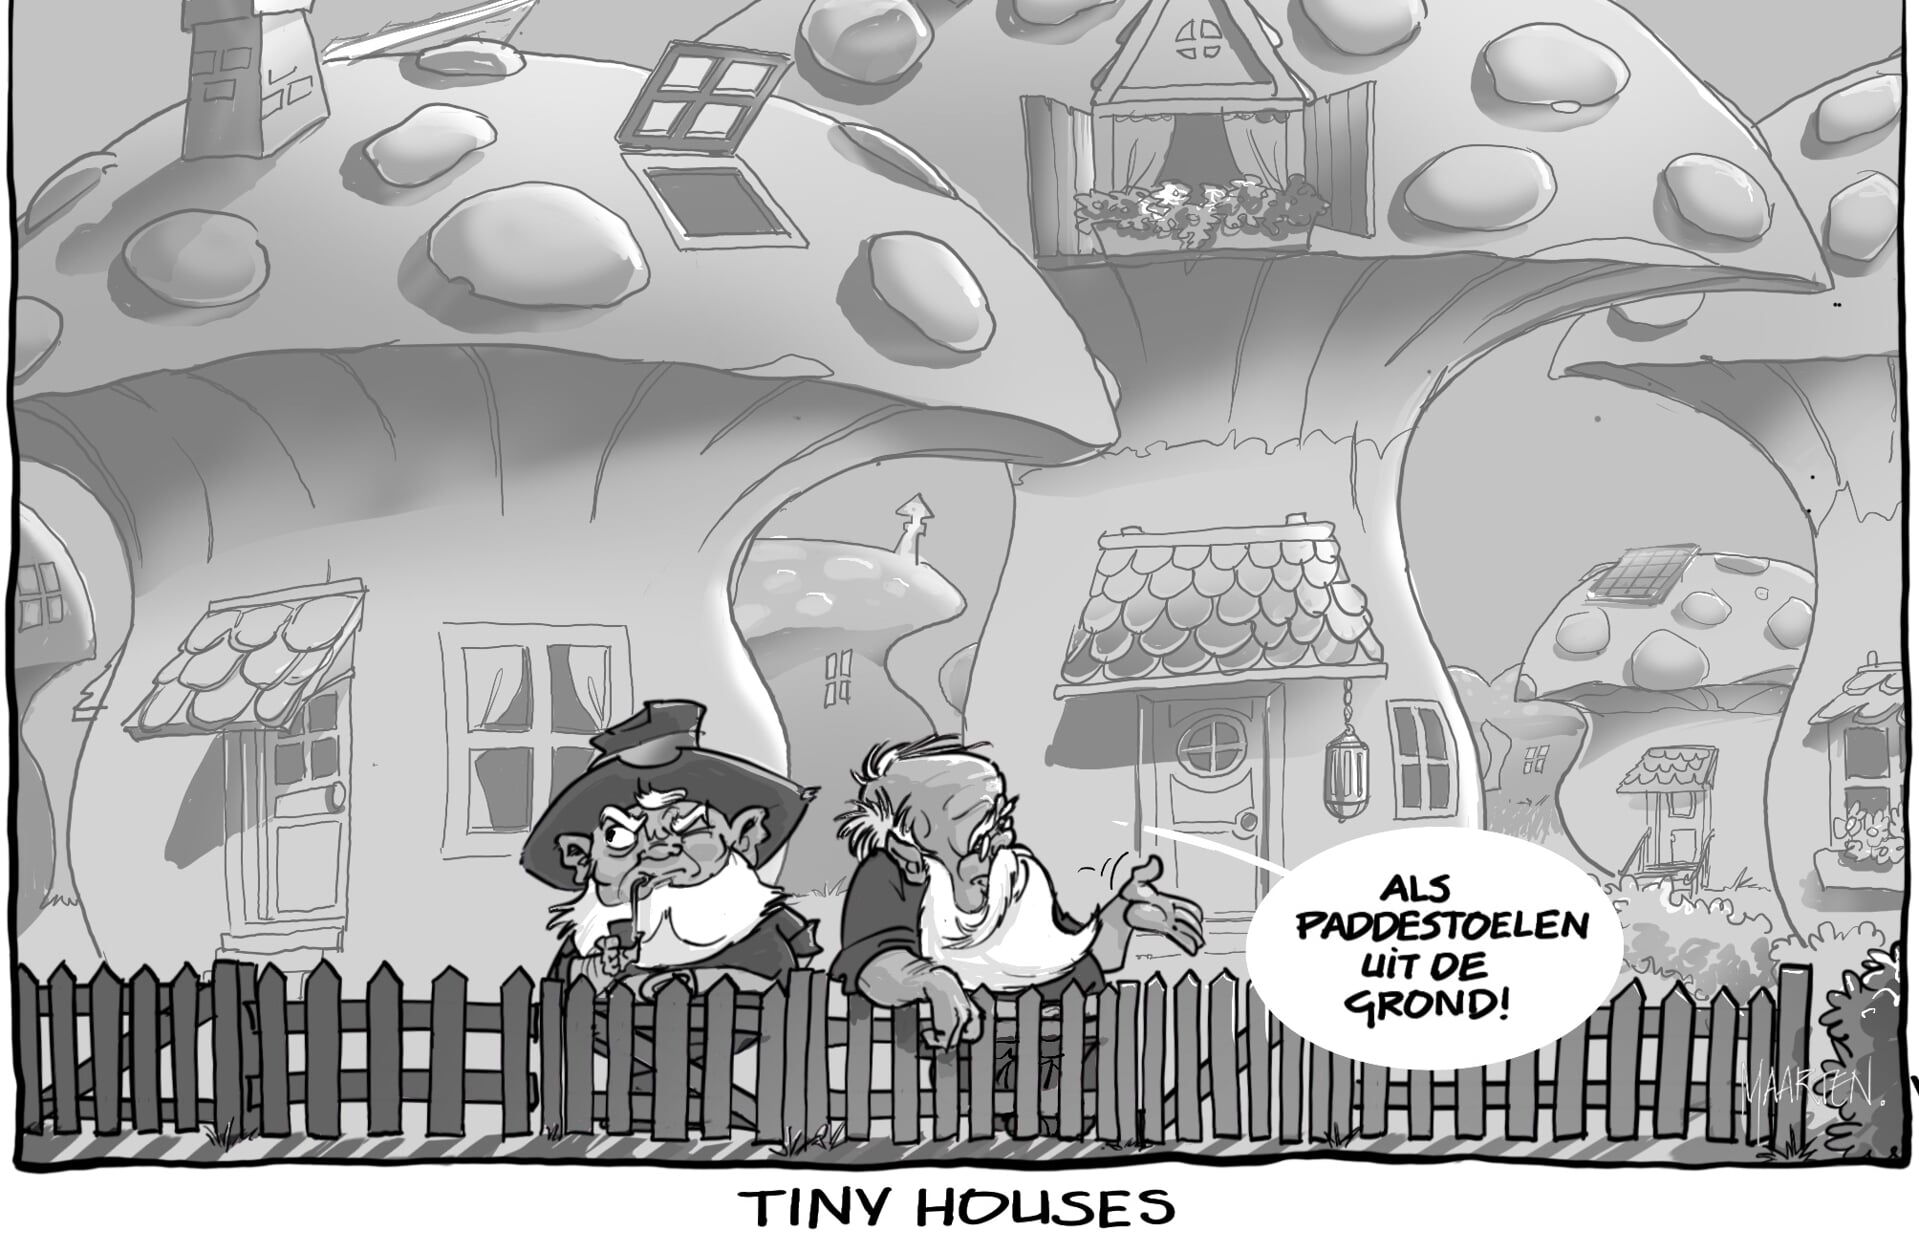 Voormalig BC-cartoonist Maarten Melis, zelf ook liefhebber van het tiny house-concept, bedacht in juni 2019 deze prent toen het onderwerp ter sprake kwam in onze krant. 